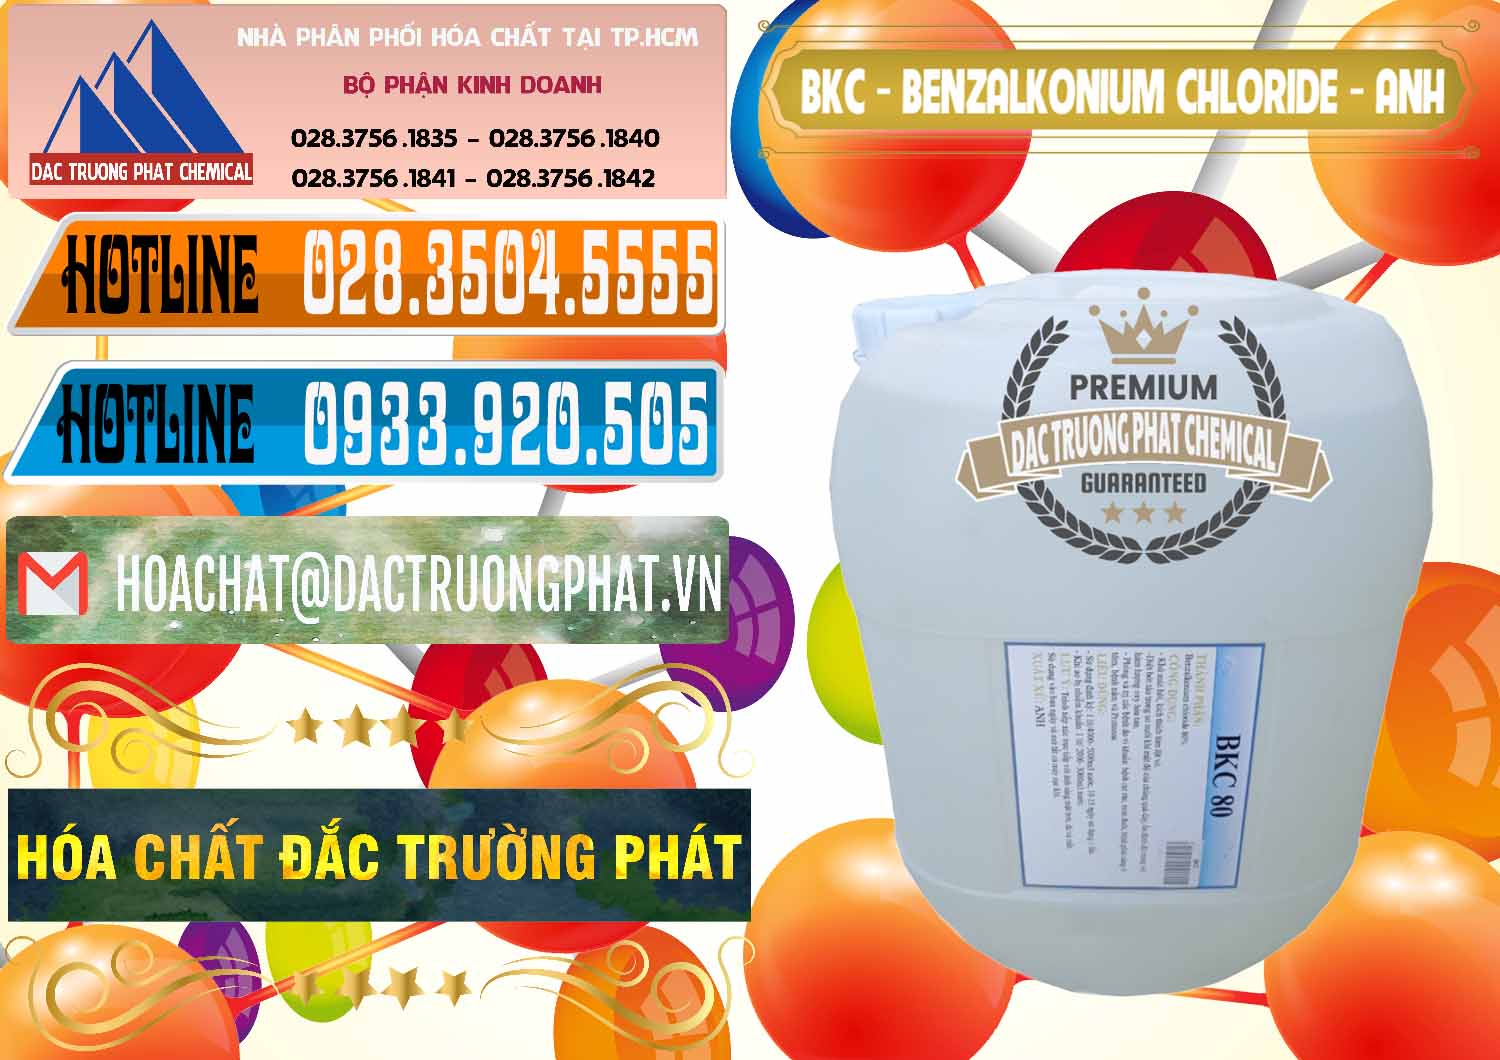 Nơi nhập khẩu & bán BKC - Benzalkonium Chloride Anh Quốc Uk Kingdoms - 0415 - Đơn vị cung cấp _ kinh doanh hóa chất tại TP.HCM - stmp.net